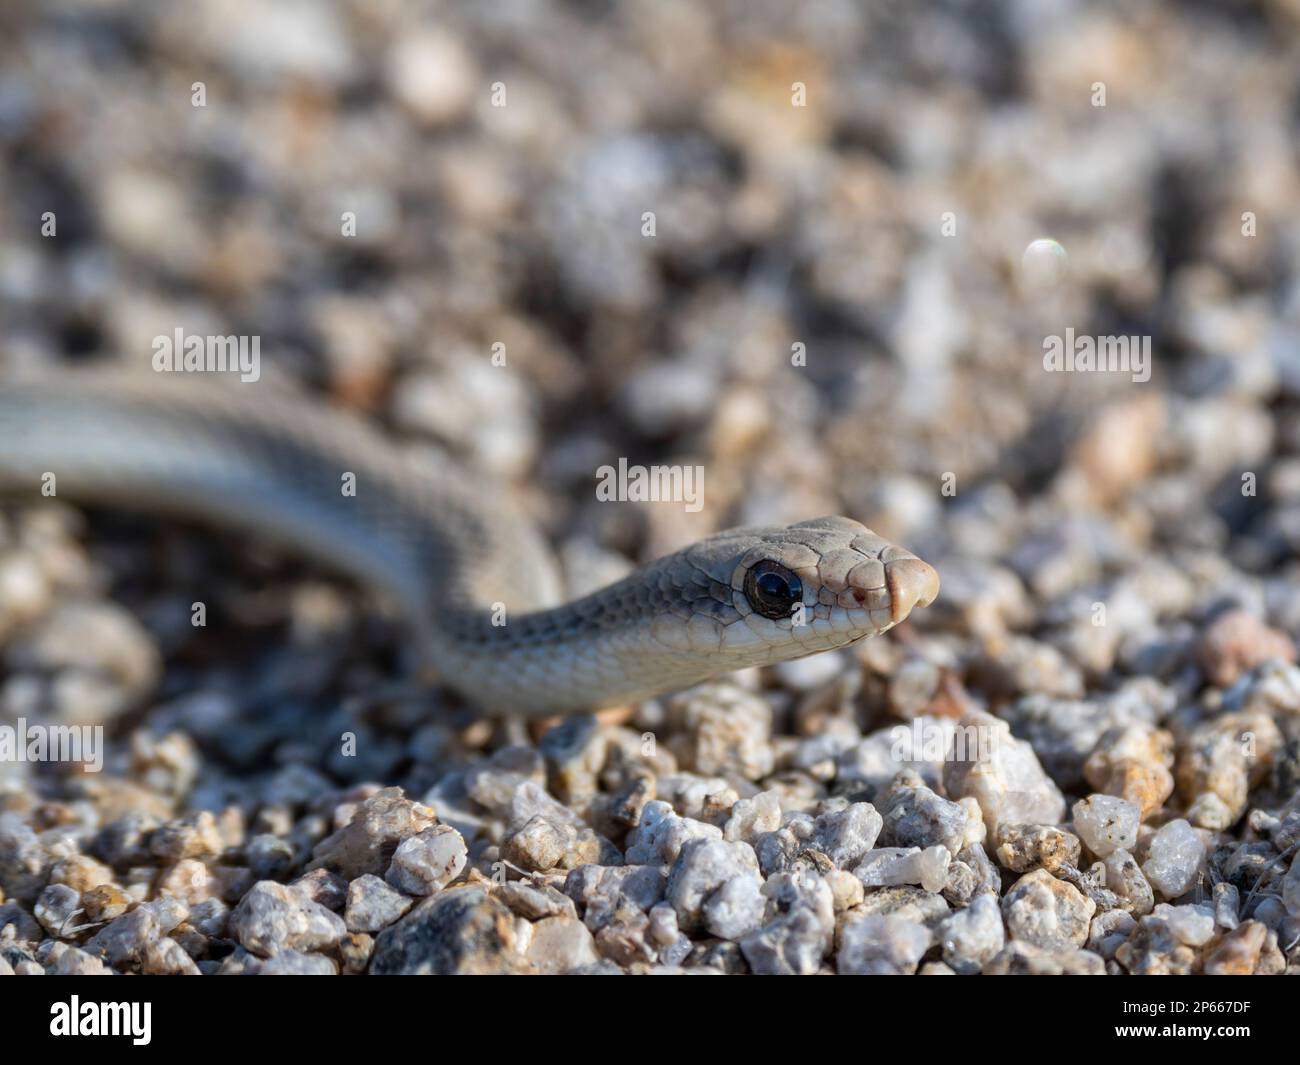 Un serpent à nez piqué (Salvadora hexalepis) adulte, dans le parc national de Joshua Tree, Californie, États-Unis d'Amérique, Amérique du Nord Banque D'Images